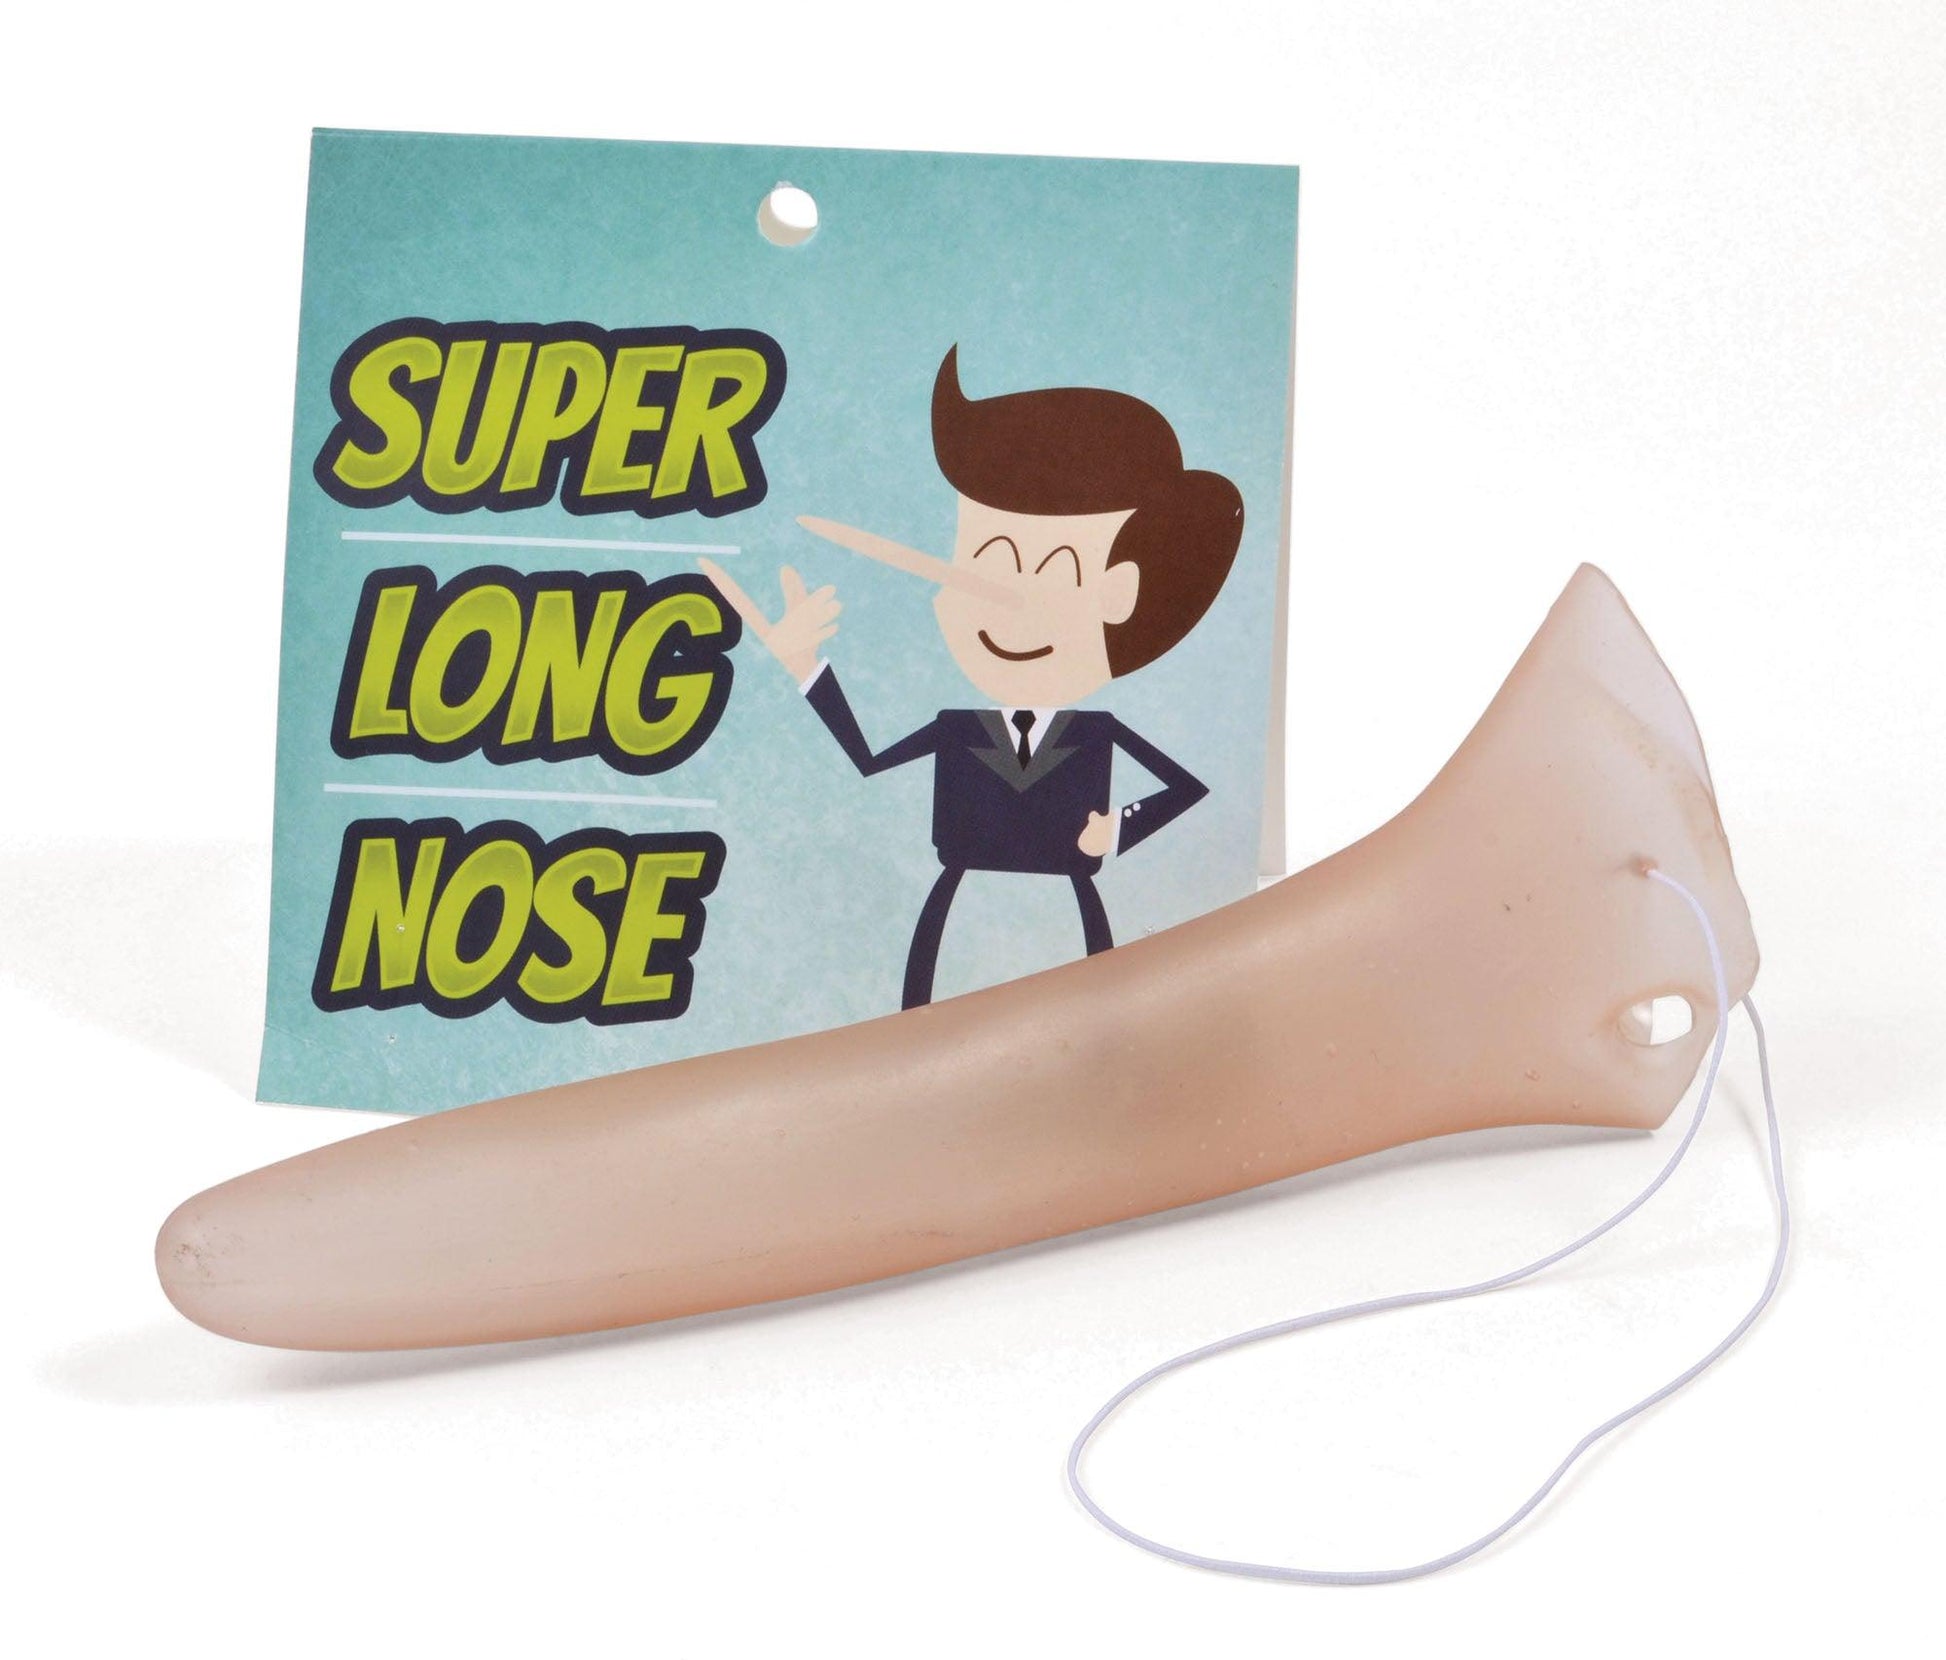 Super Long Nose (Pincchio Type) - Labreeze